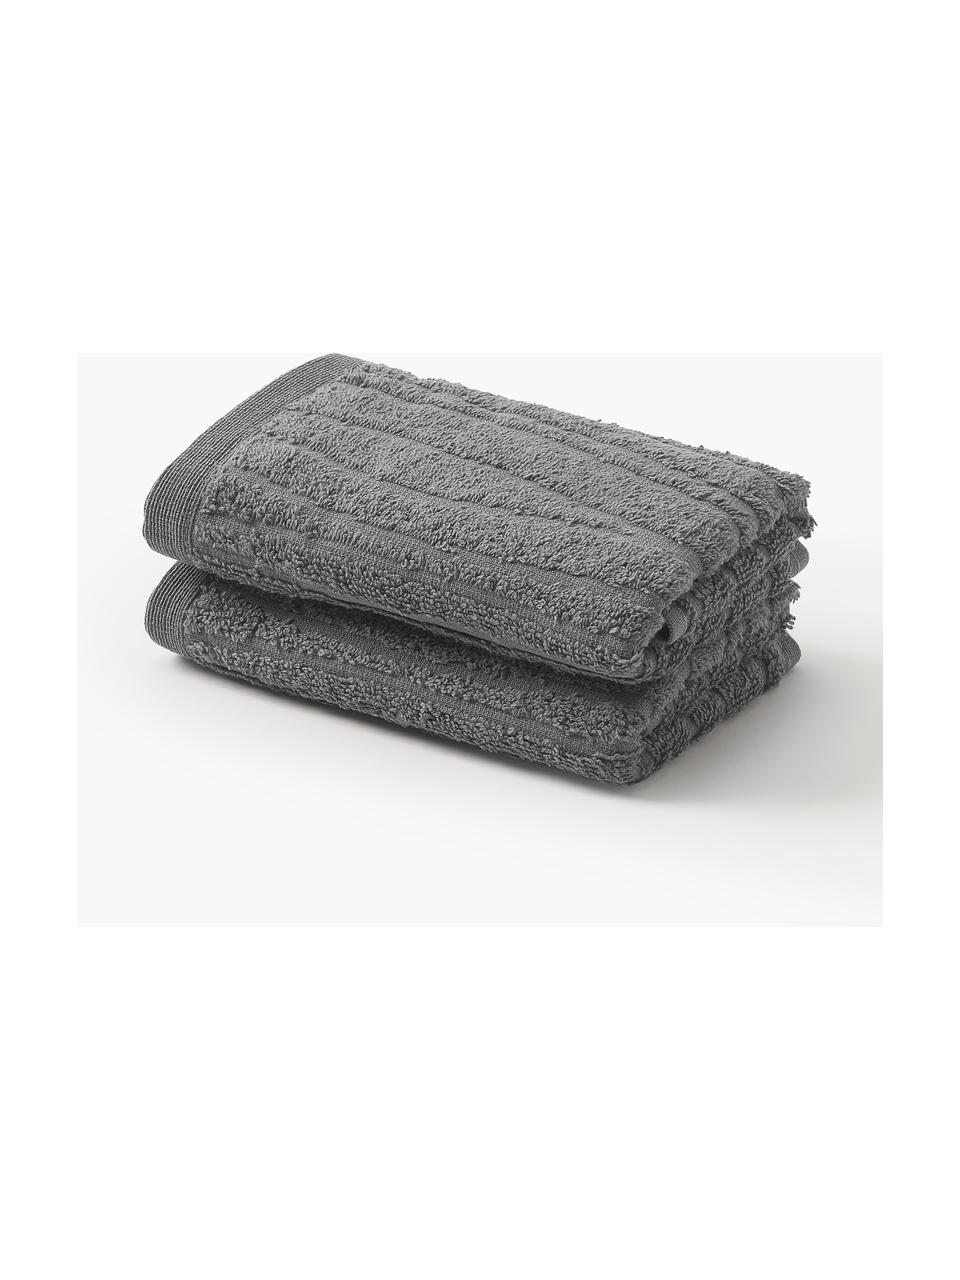 Katoenen handdoek Audrina in verschillende formaten, Donkergrijs, Handdoek, B 50 x L 100 cm, 2 stuks